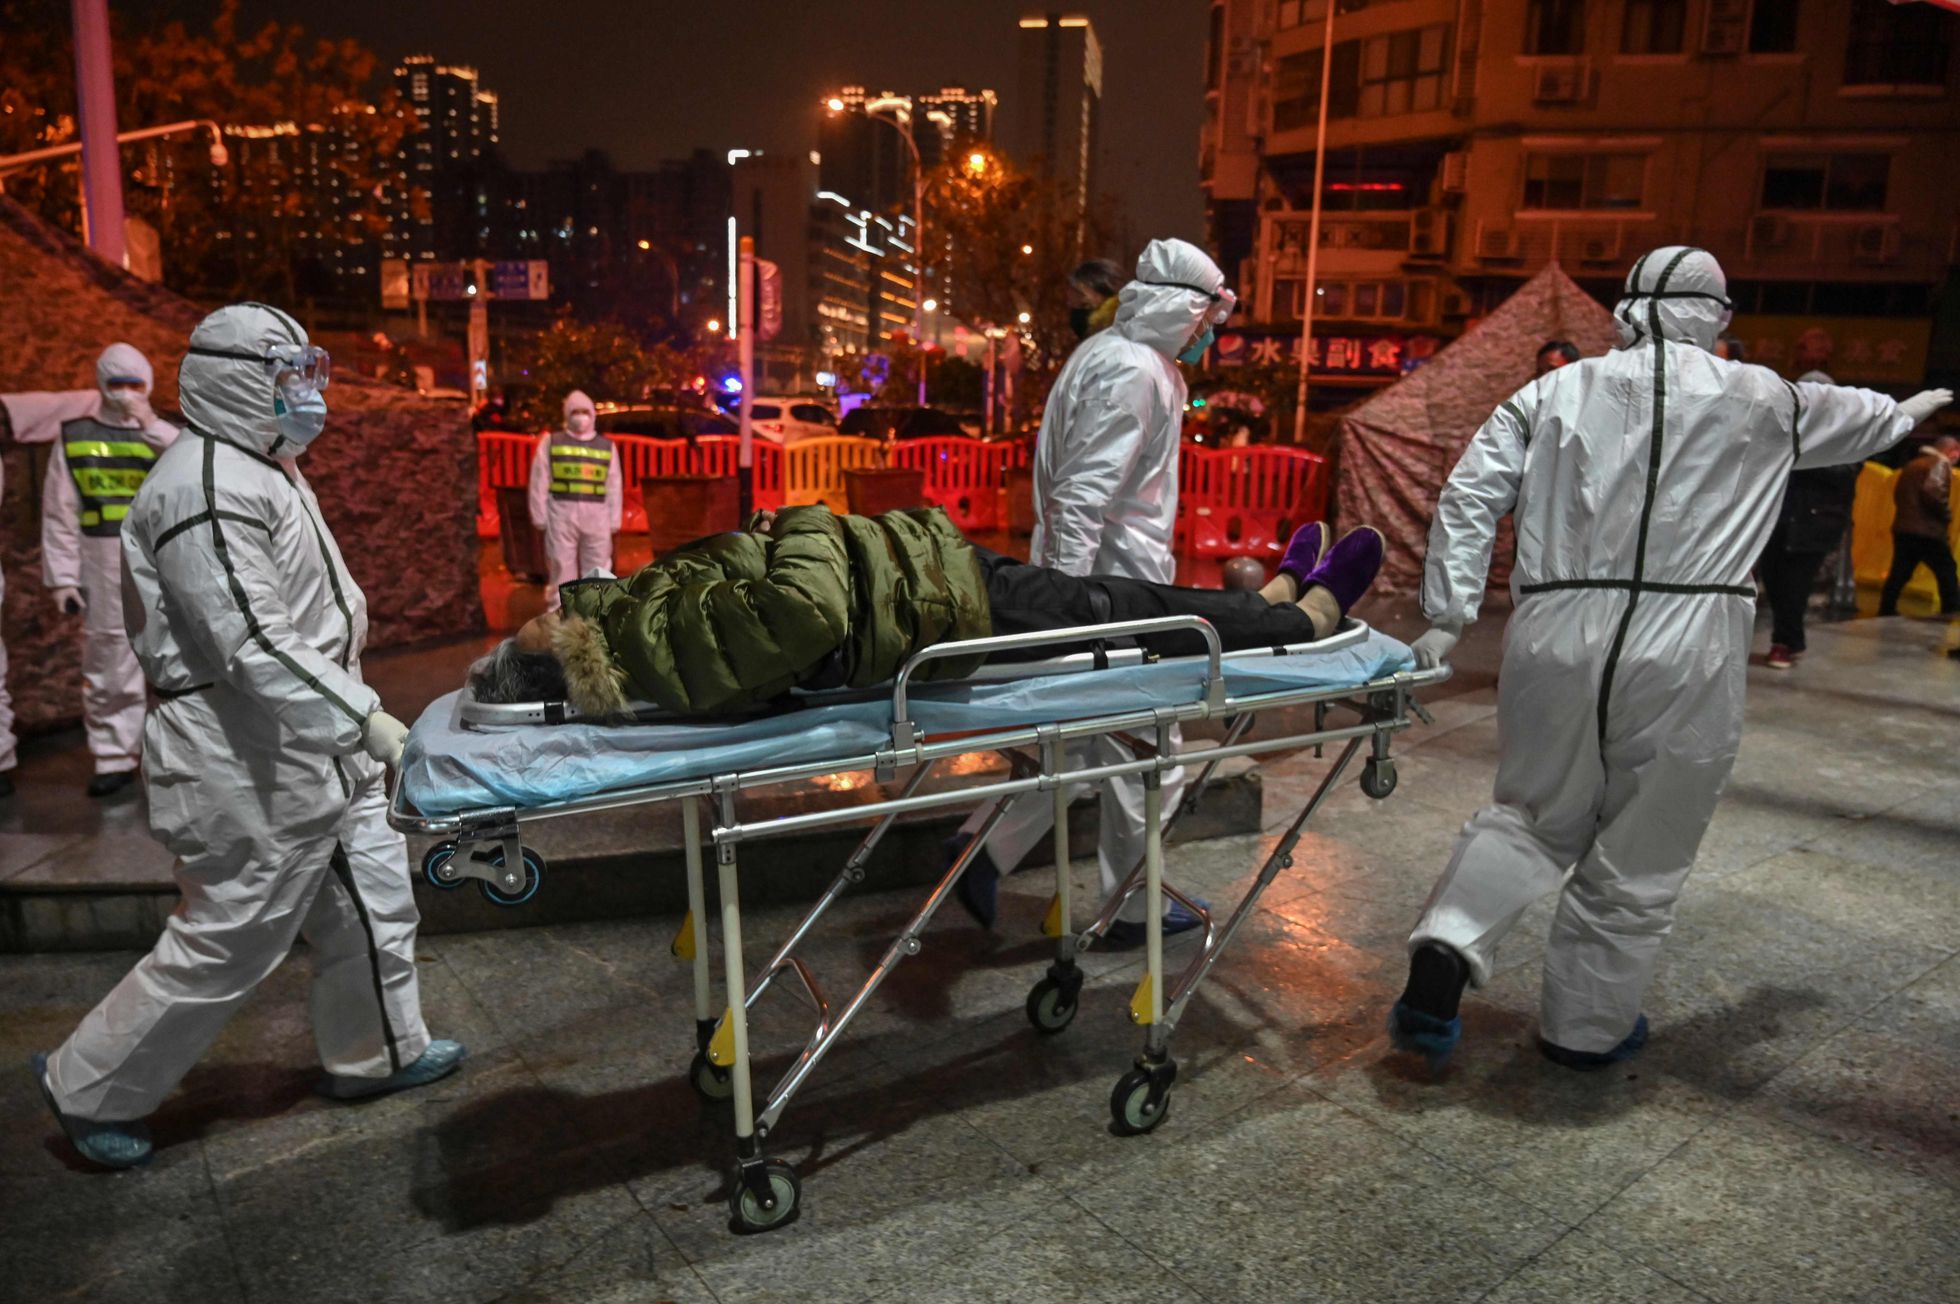 Traslado de un paciente con coronavirus, el 25 de enero, al hospital de la Cruz Roja en Wuhan (China), la ciudad donde se identificó el virus por primera vez.